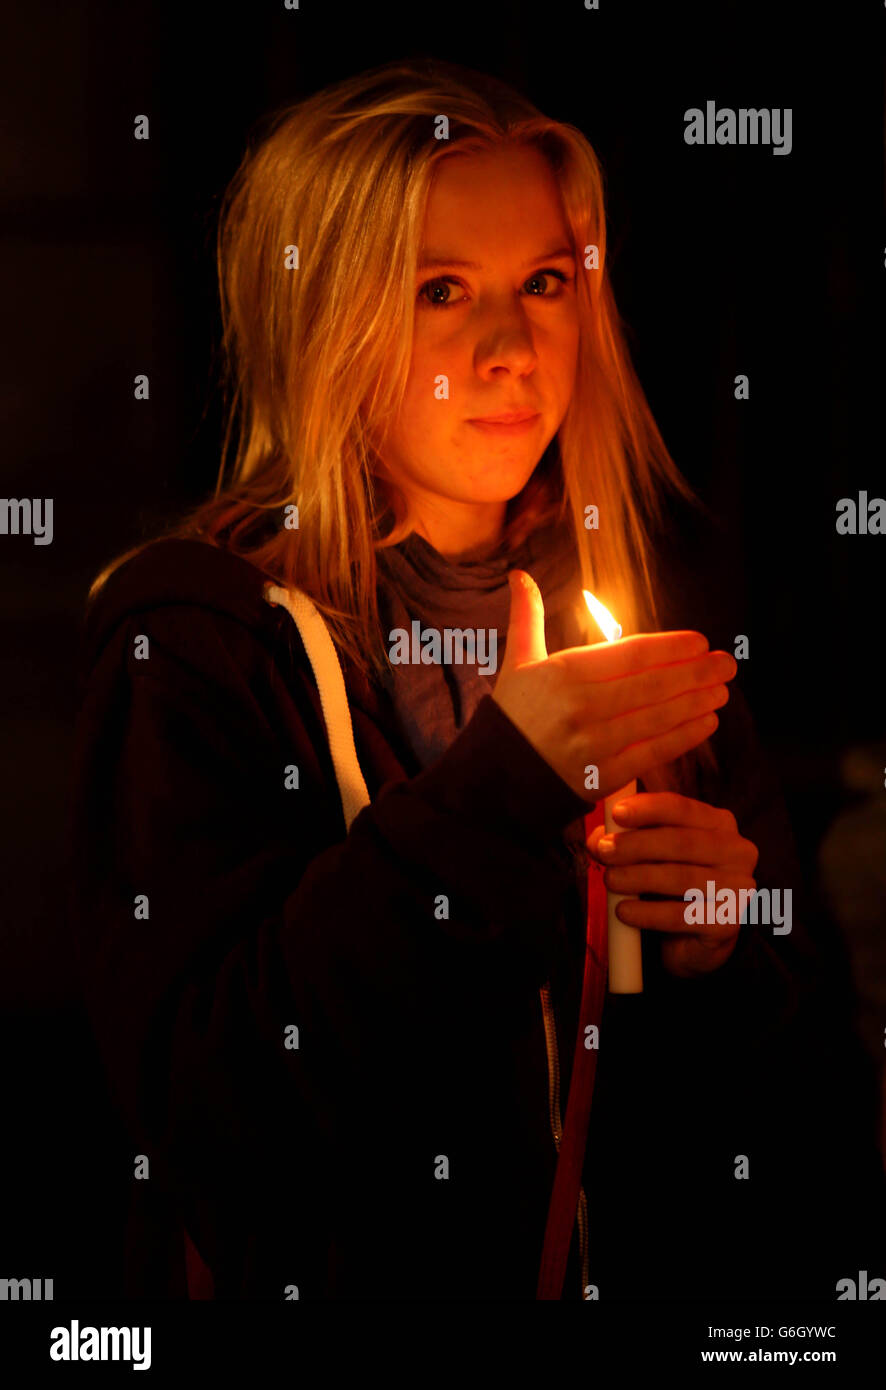 La gente frequenta una veglia a lume di candela a St Stephens Green a Dublino per celebrare un anno dalla morte di Savita Halappanavar. Foto Stock